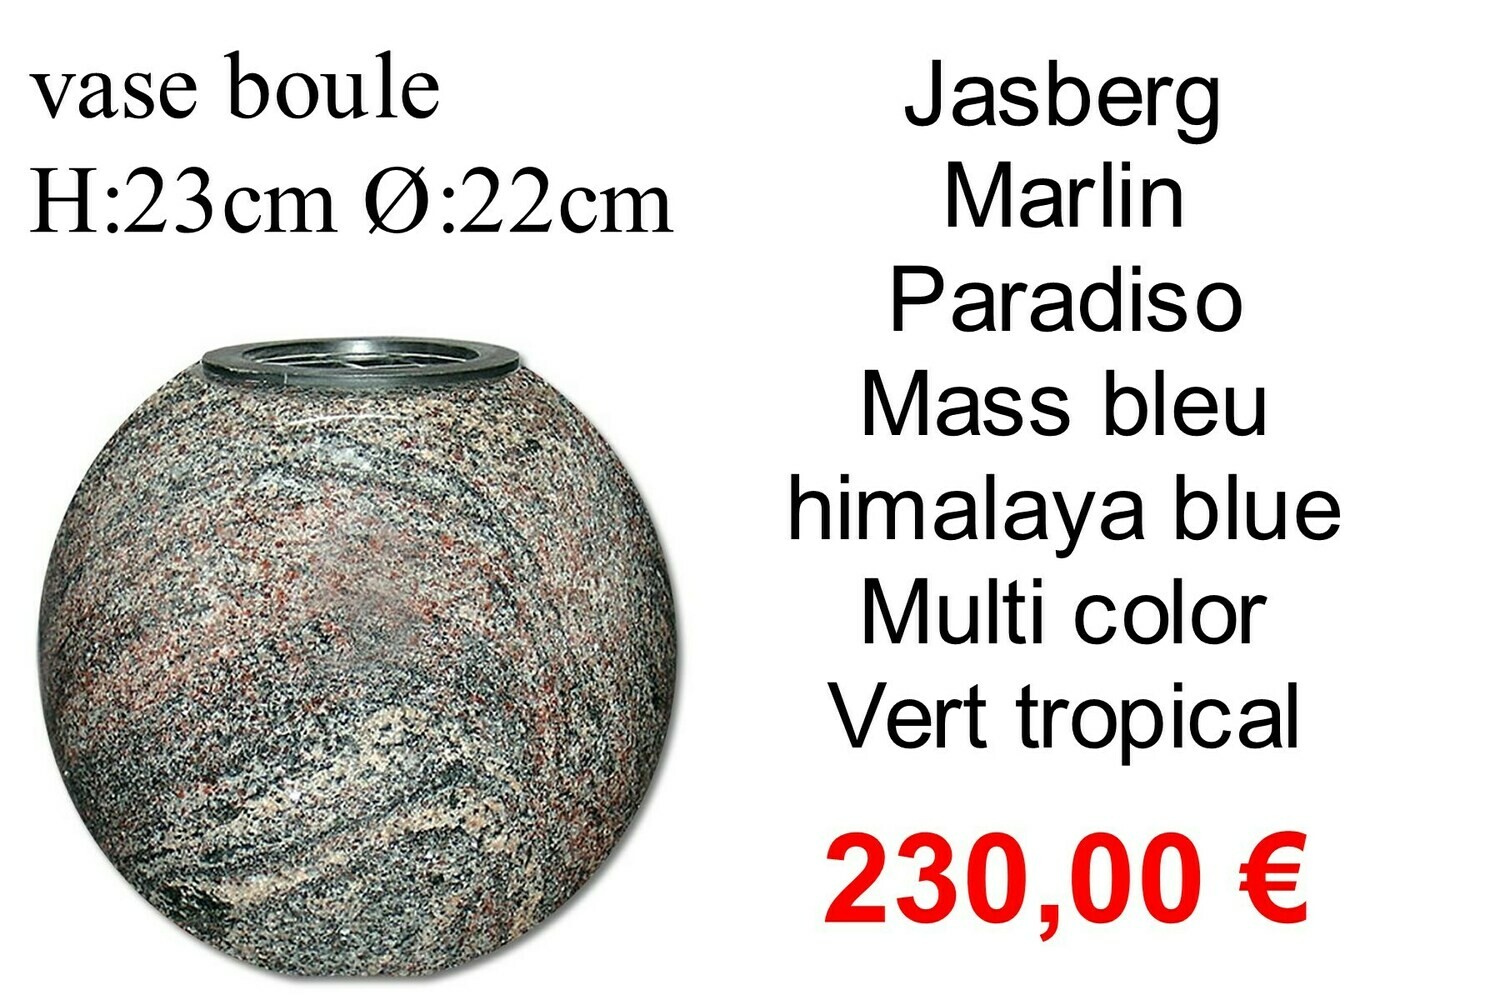 Vase boule hors frais d'emballages et livraison 12,50 € par commande